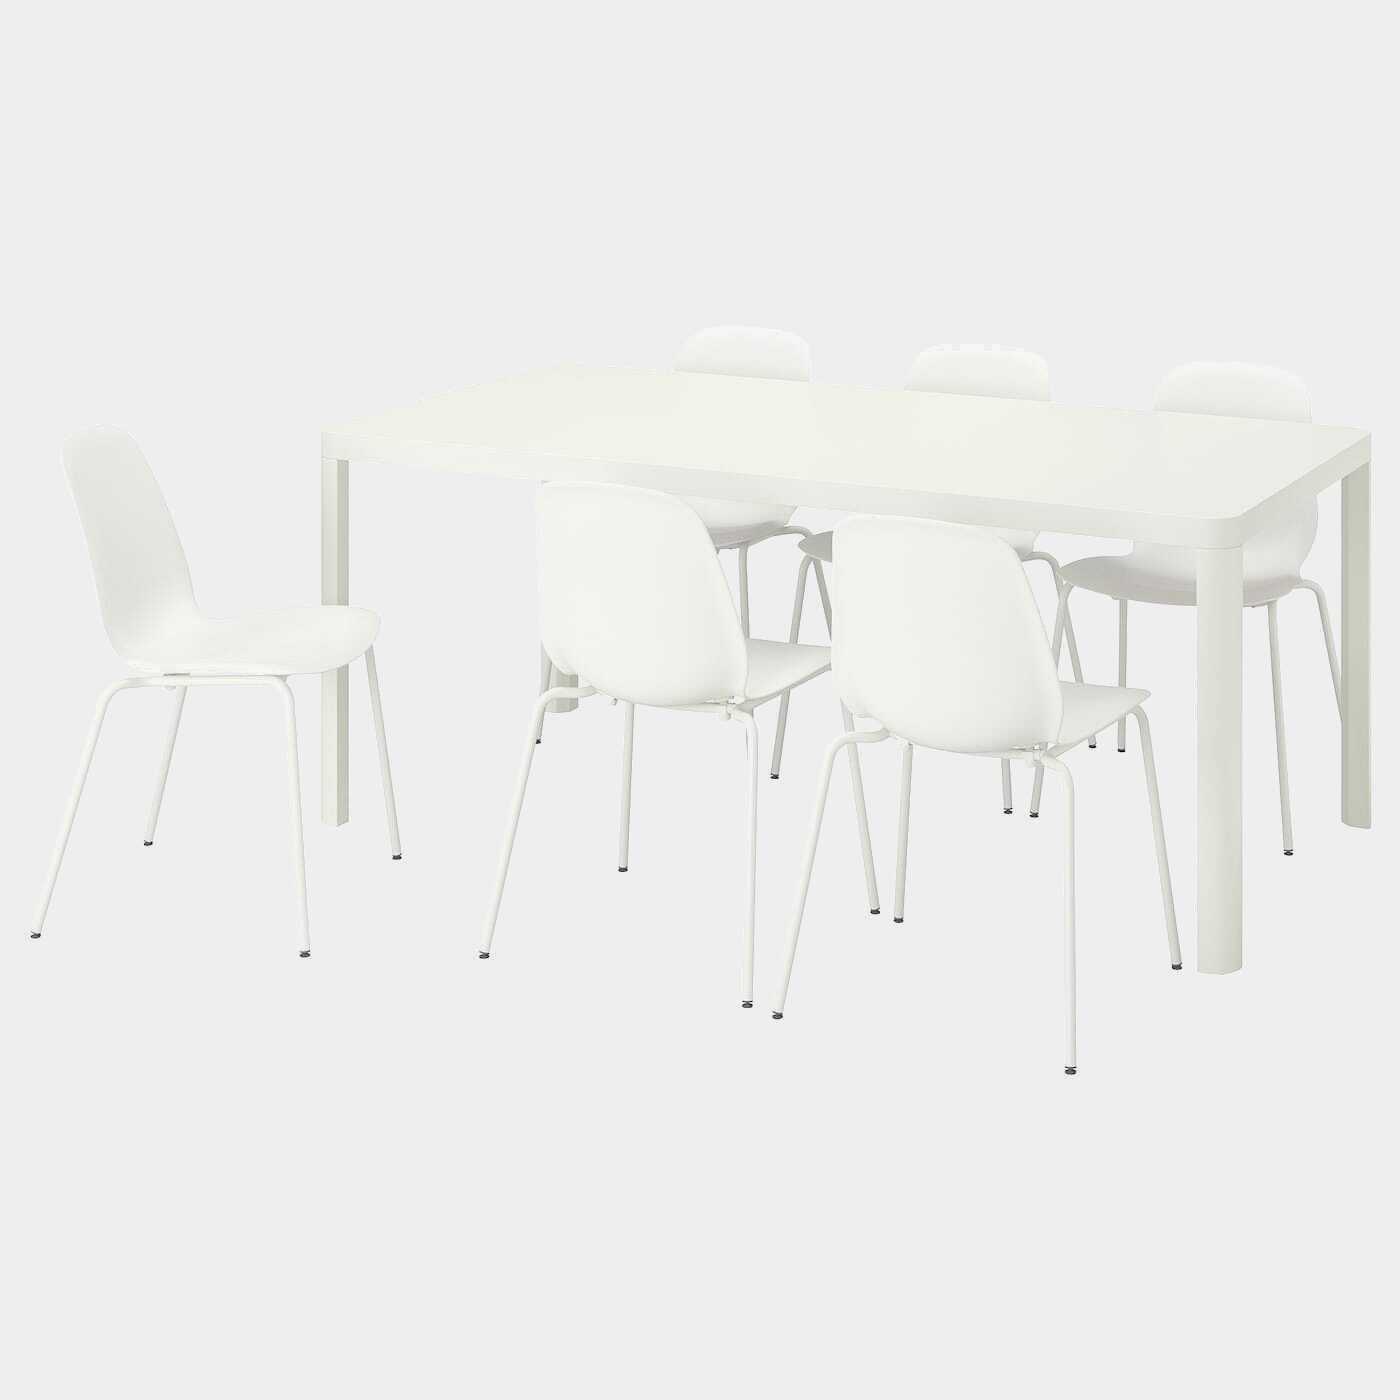 TINGBY / LEIFARNE Tisch und 6 Stühle  - Essplatzgruppe - Möbel Ideen für dein Zuhause von Home Trends. Möbel Trends von Social Media Influencer für dein Skandi Zuhause.